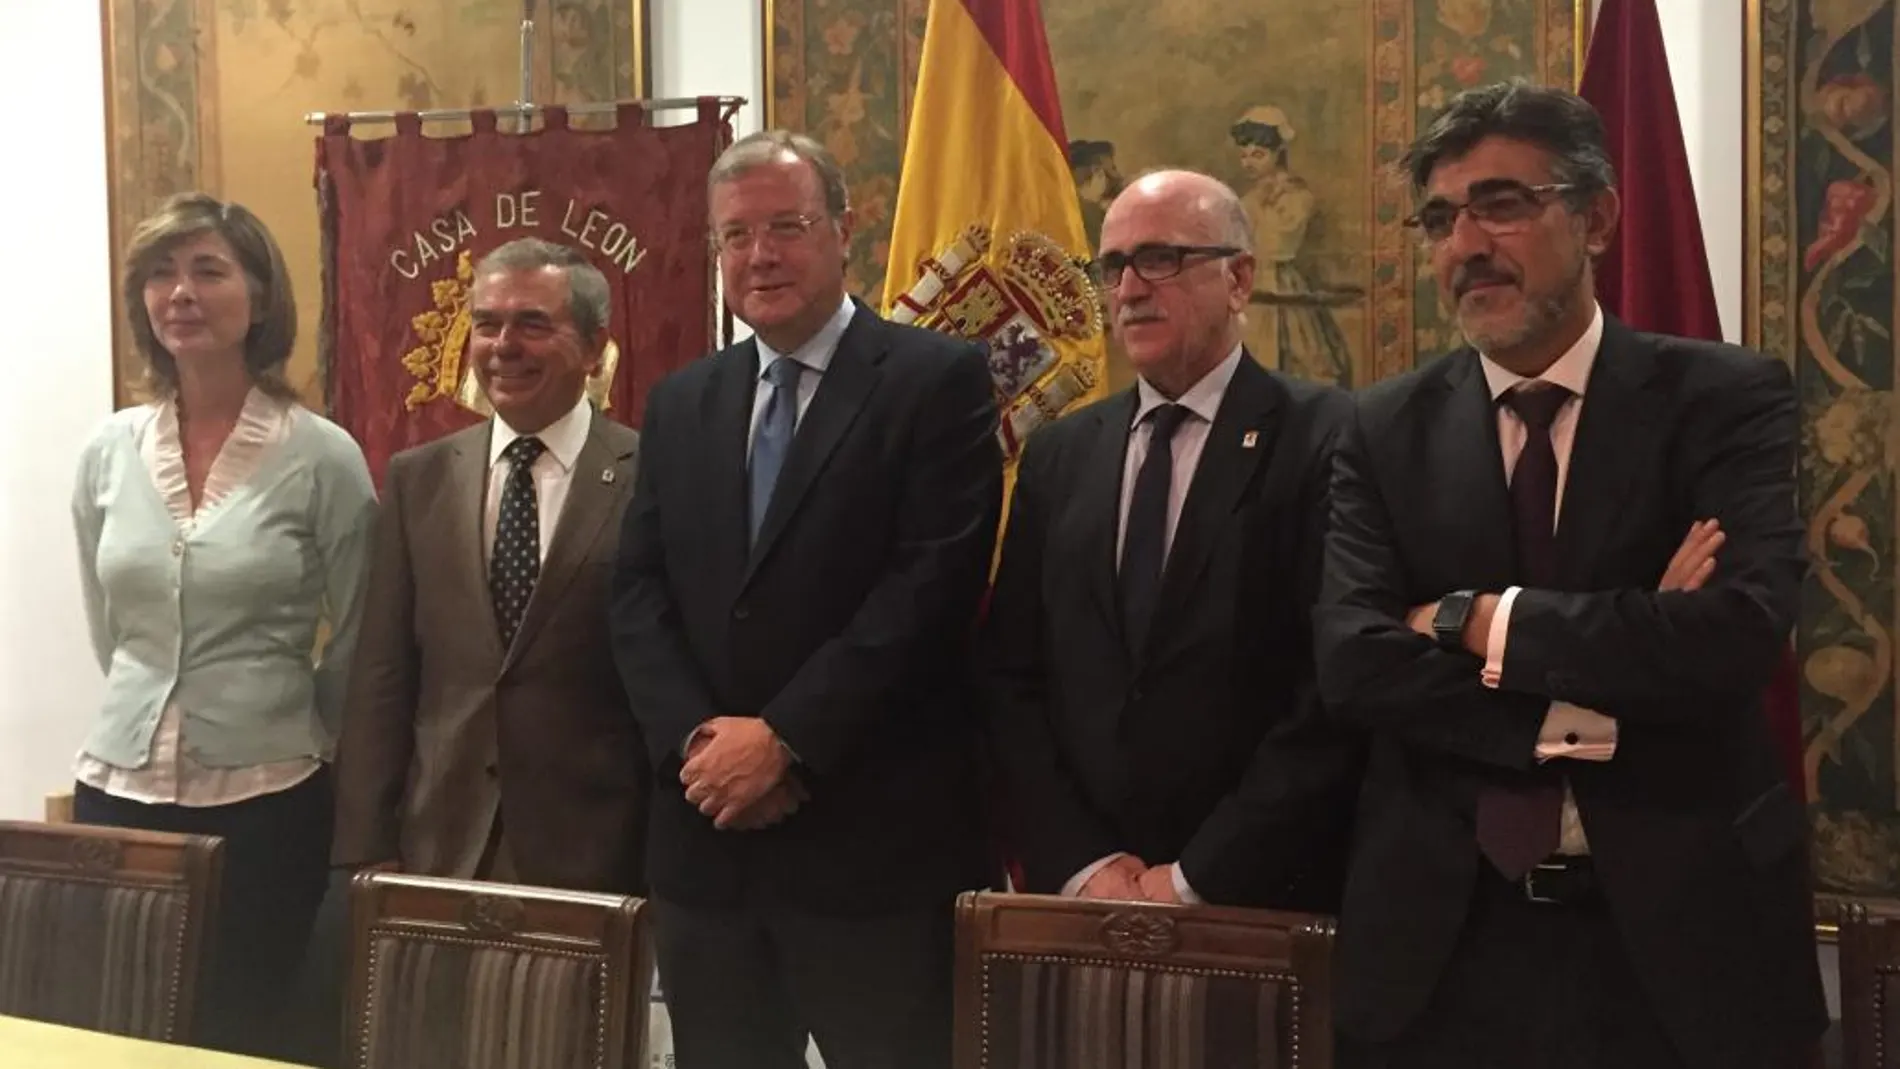 El alcalde de León, Antonio Silván, durante el acto de este martes en Madrid